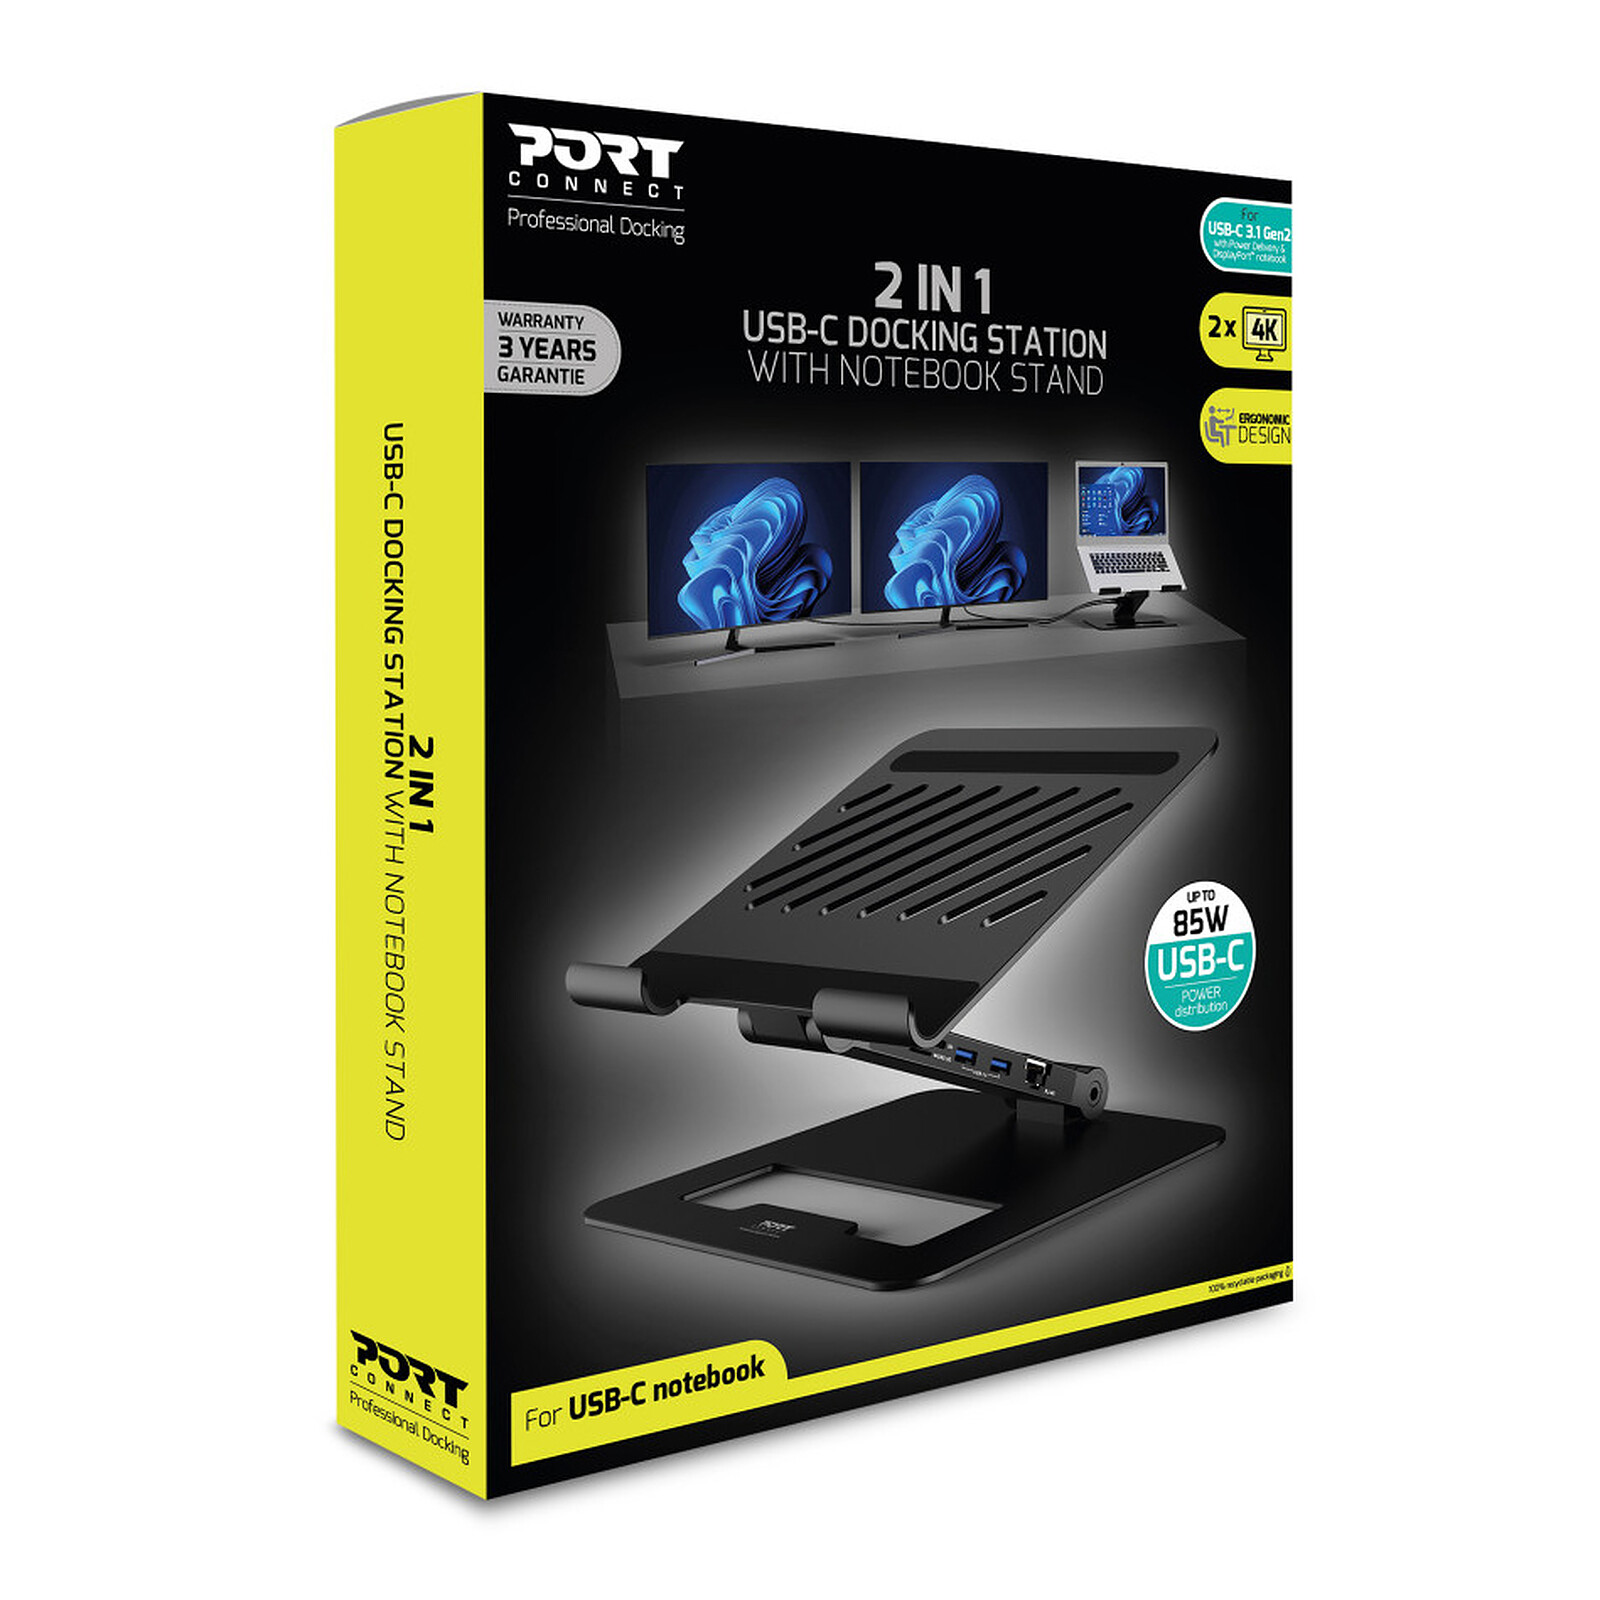 PORT Connect Chargeur Secteur Combo 120W - 2x 100W + 1x 30W USB-C Power  Delivery / 1x USB-A - USB - Garantie 3 ans LDLC